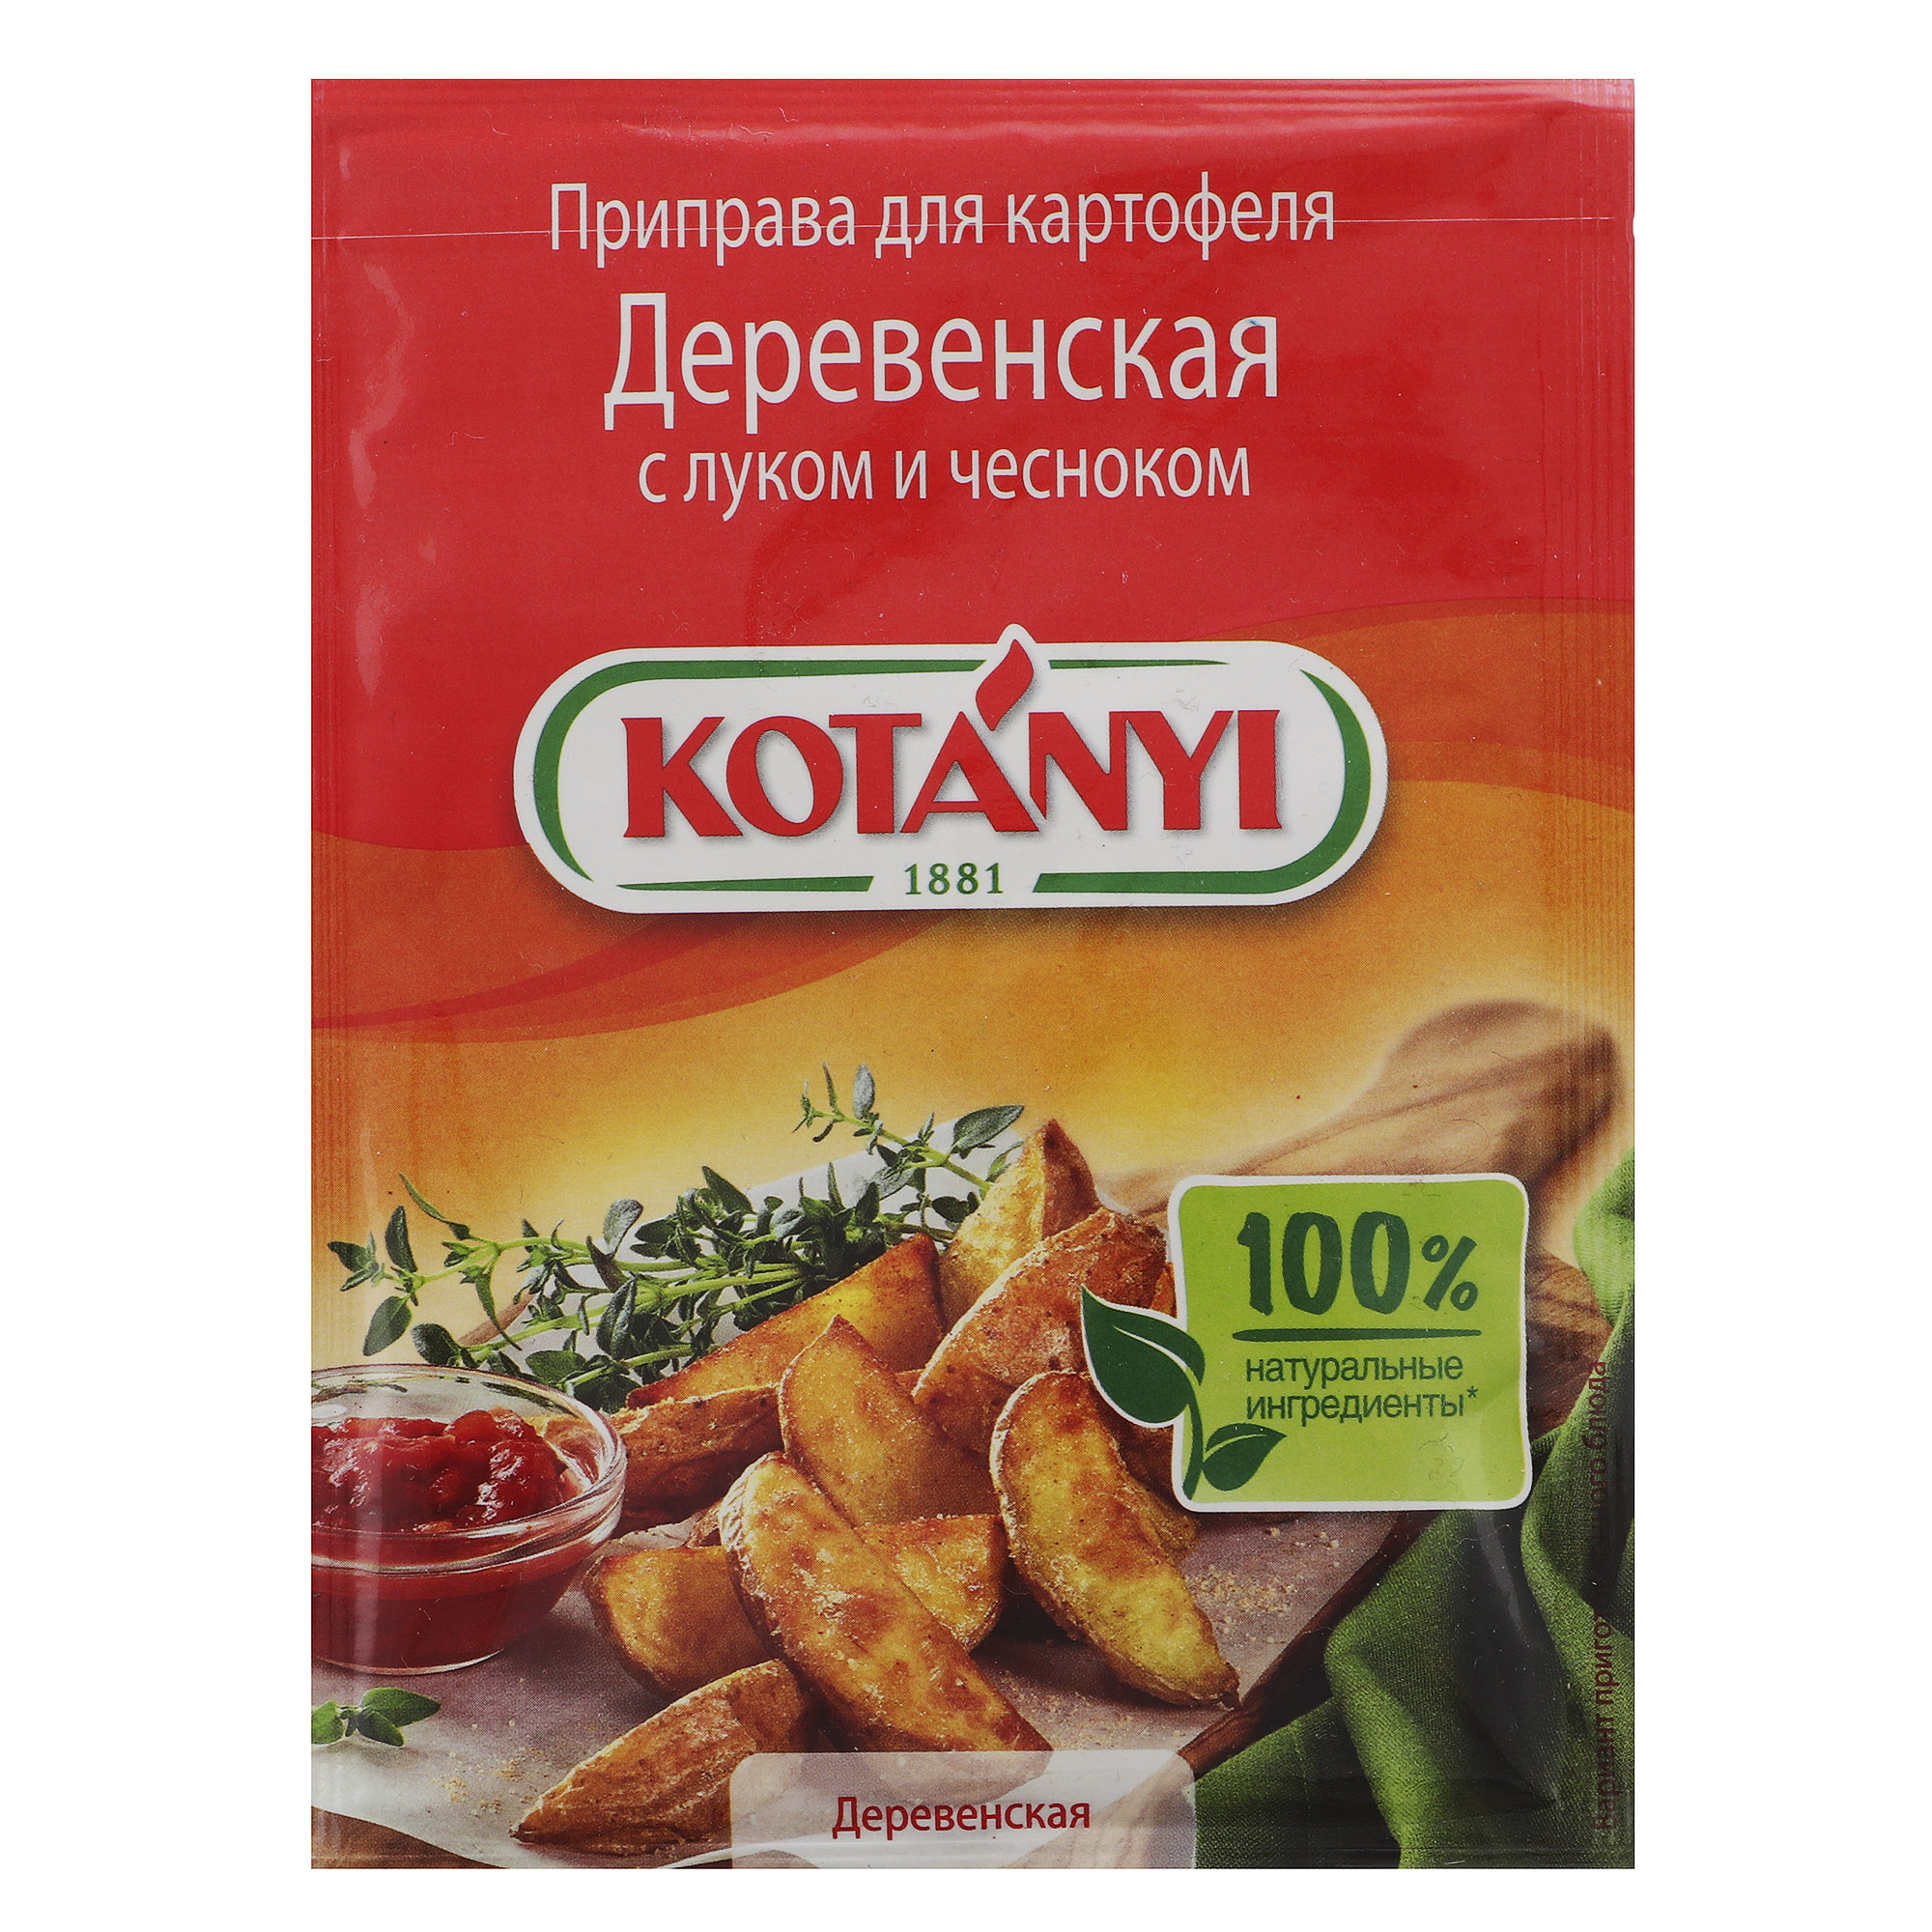 Приправа Kotanyi Деревенская для картофеля с луком и чесноком 20 г приправа kotanyi перечная смесь с лимоном 20 г